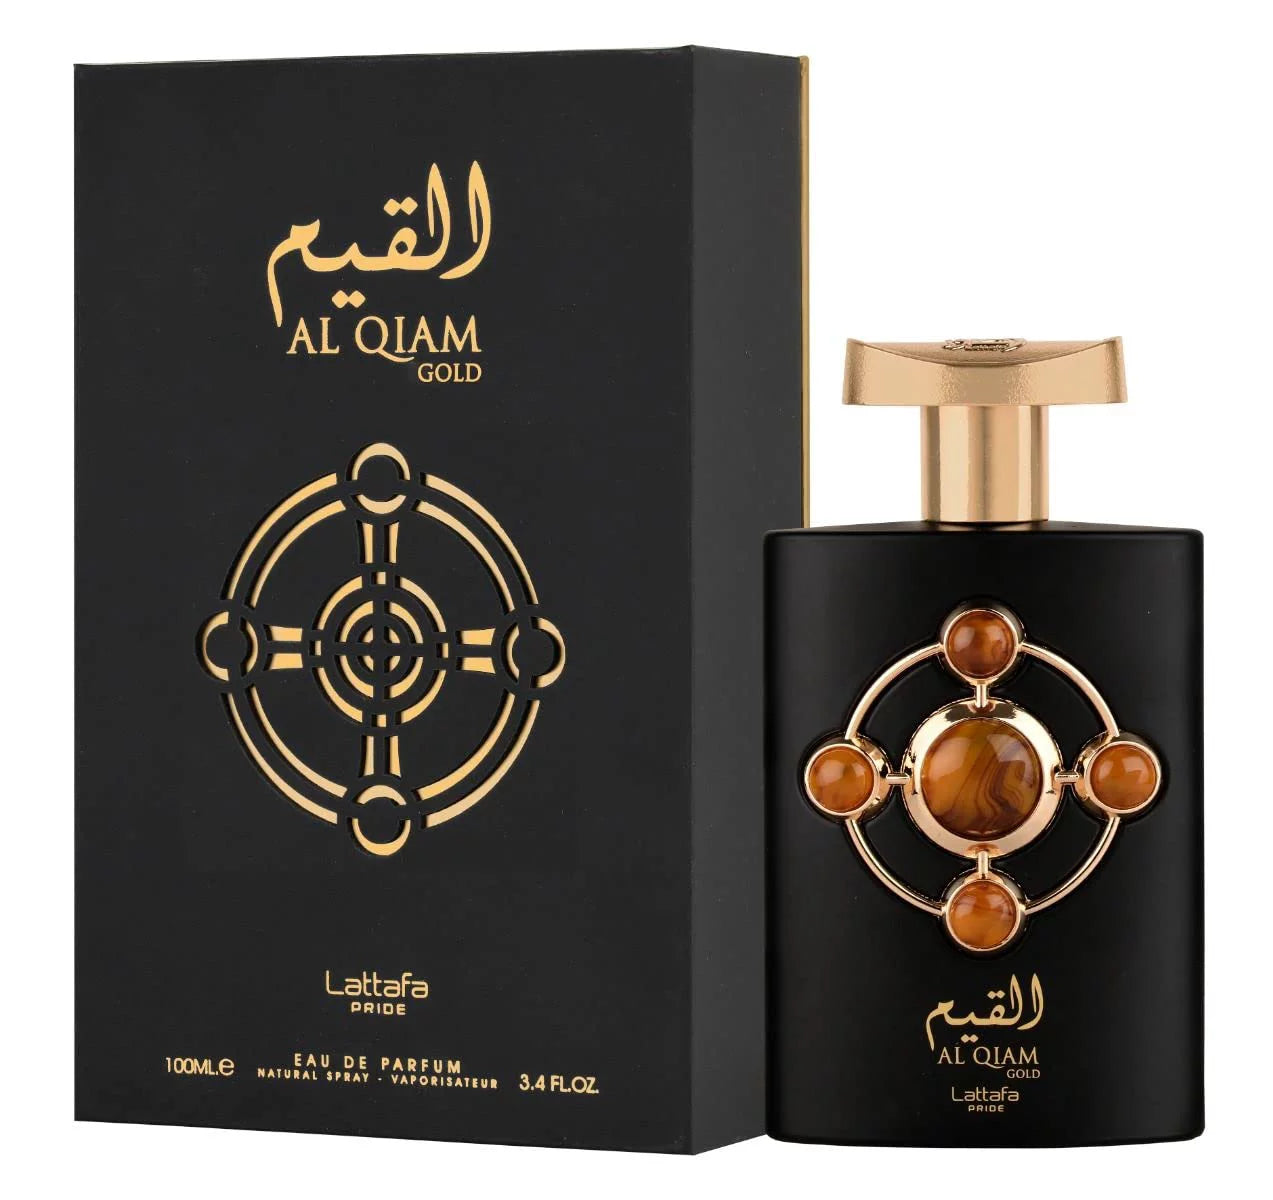 Al Qiam Gold EDP (100ml) spray perfume by Lattafa | Khan El Khalili